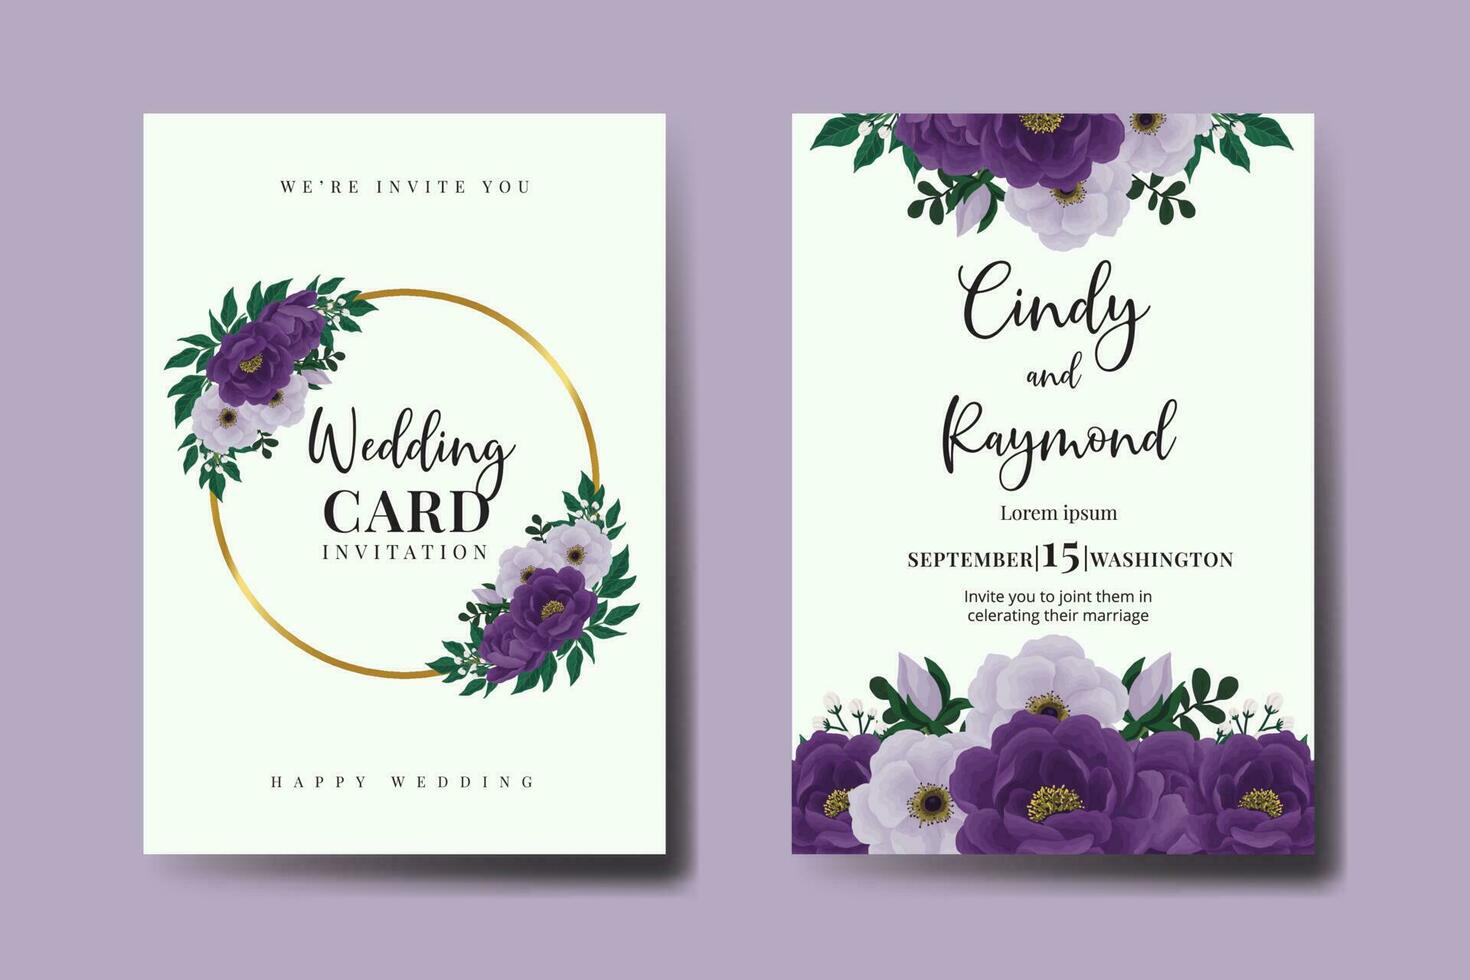 Conjunto de marco de invitación de boda, plantilla de tarjeta de invitación de diseño de flor de peonía púrpura dibujado a mano digital acuarela floral vector